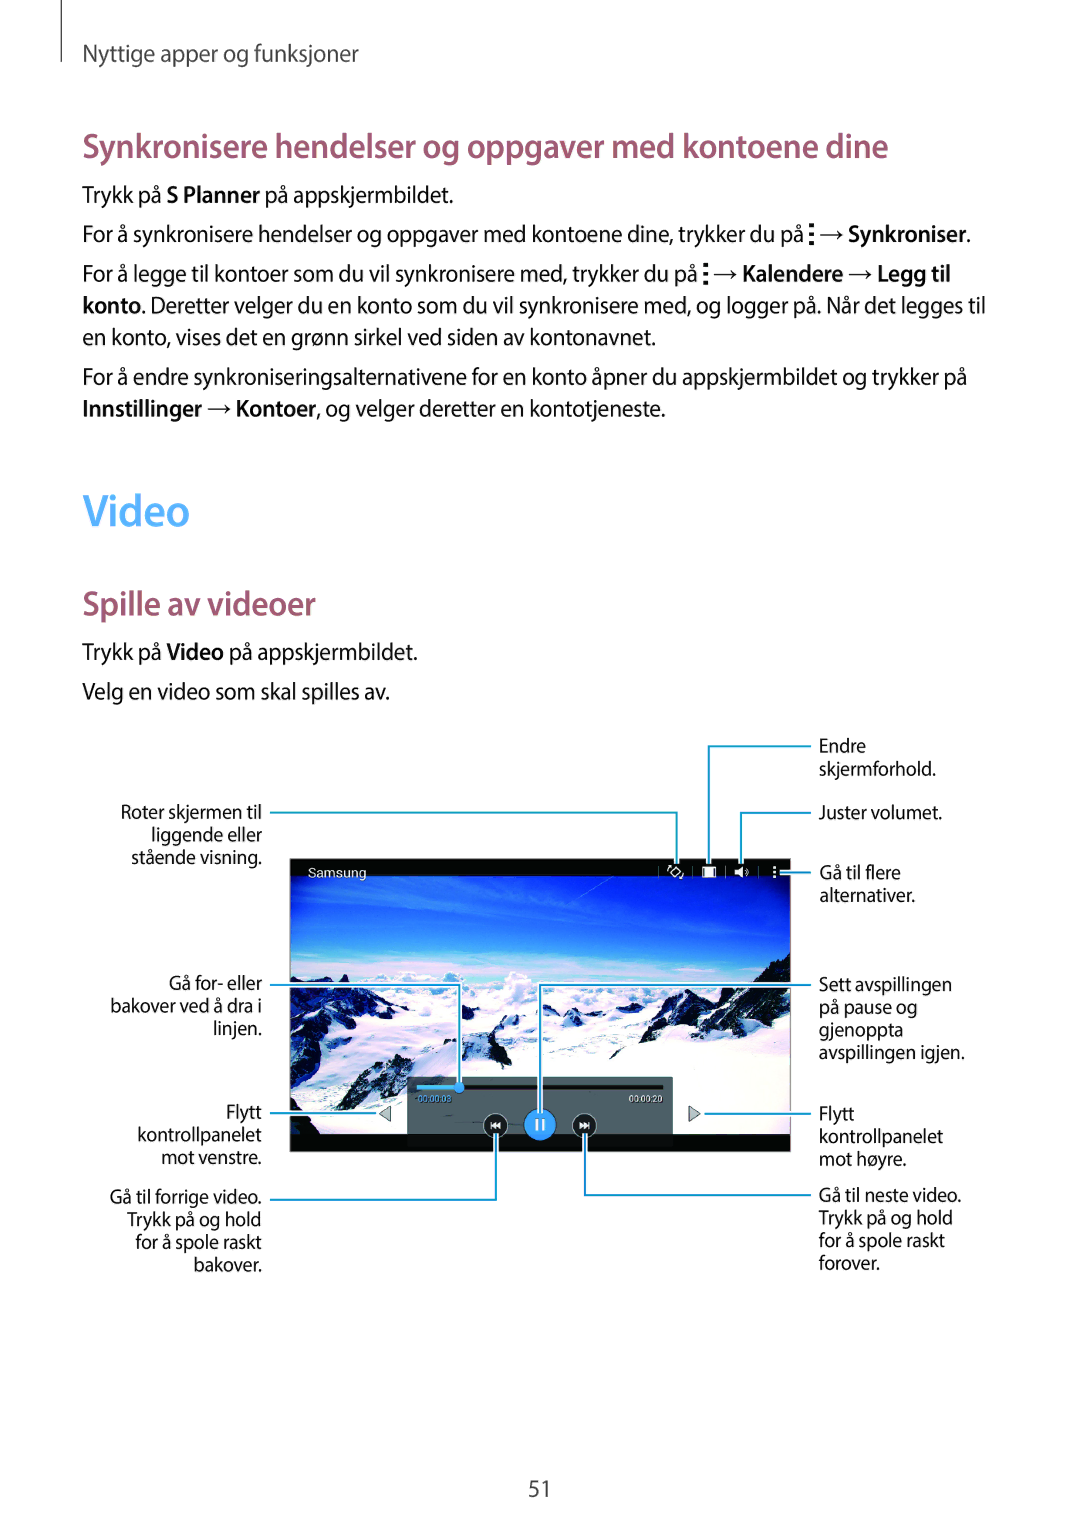 Samsung SM-T113NYKANEE, SM-T113NDWANEE manual Video, Synkronisere hendelser og oppgaver med kontoene dine, Spille av videoer 